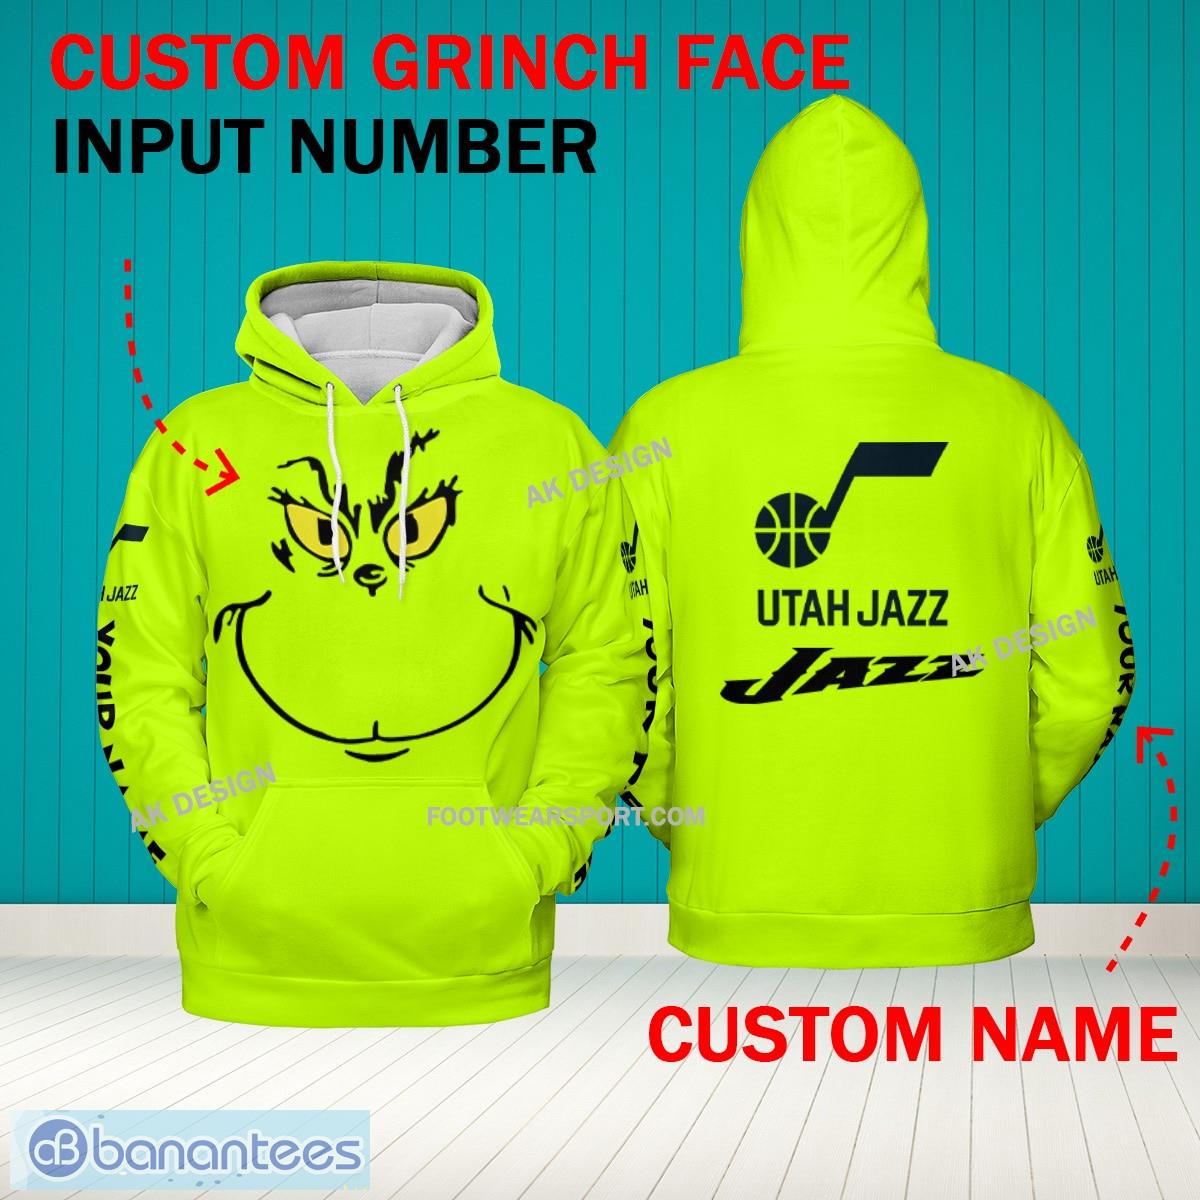 Grinch Face Utah Jazz 3D Hoodie, Zip Hoodie, Sweater Green AOP Custom Number And Name - Grinch Face NBA Utah Jazz 3D Hoodie